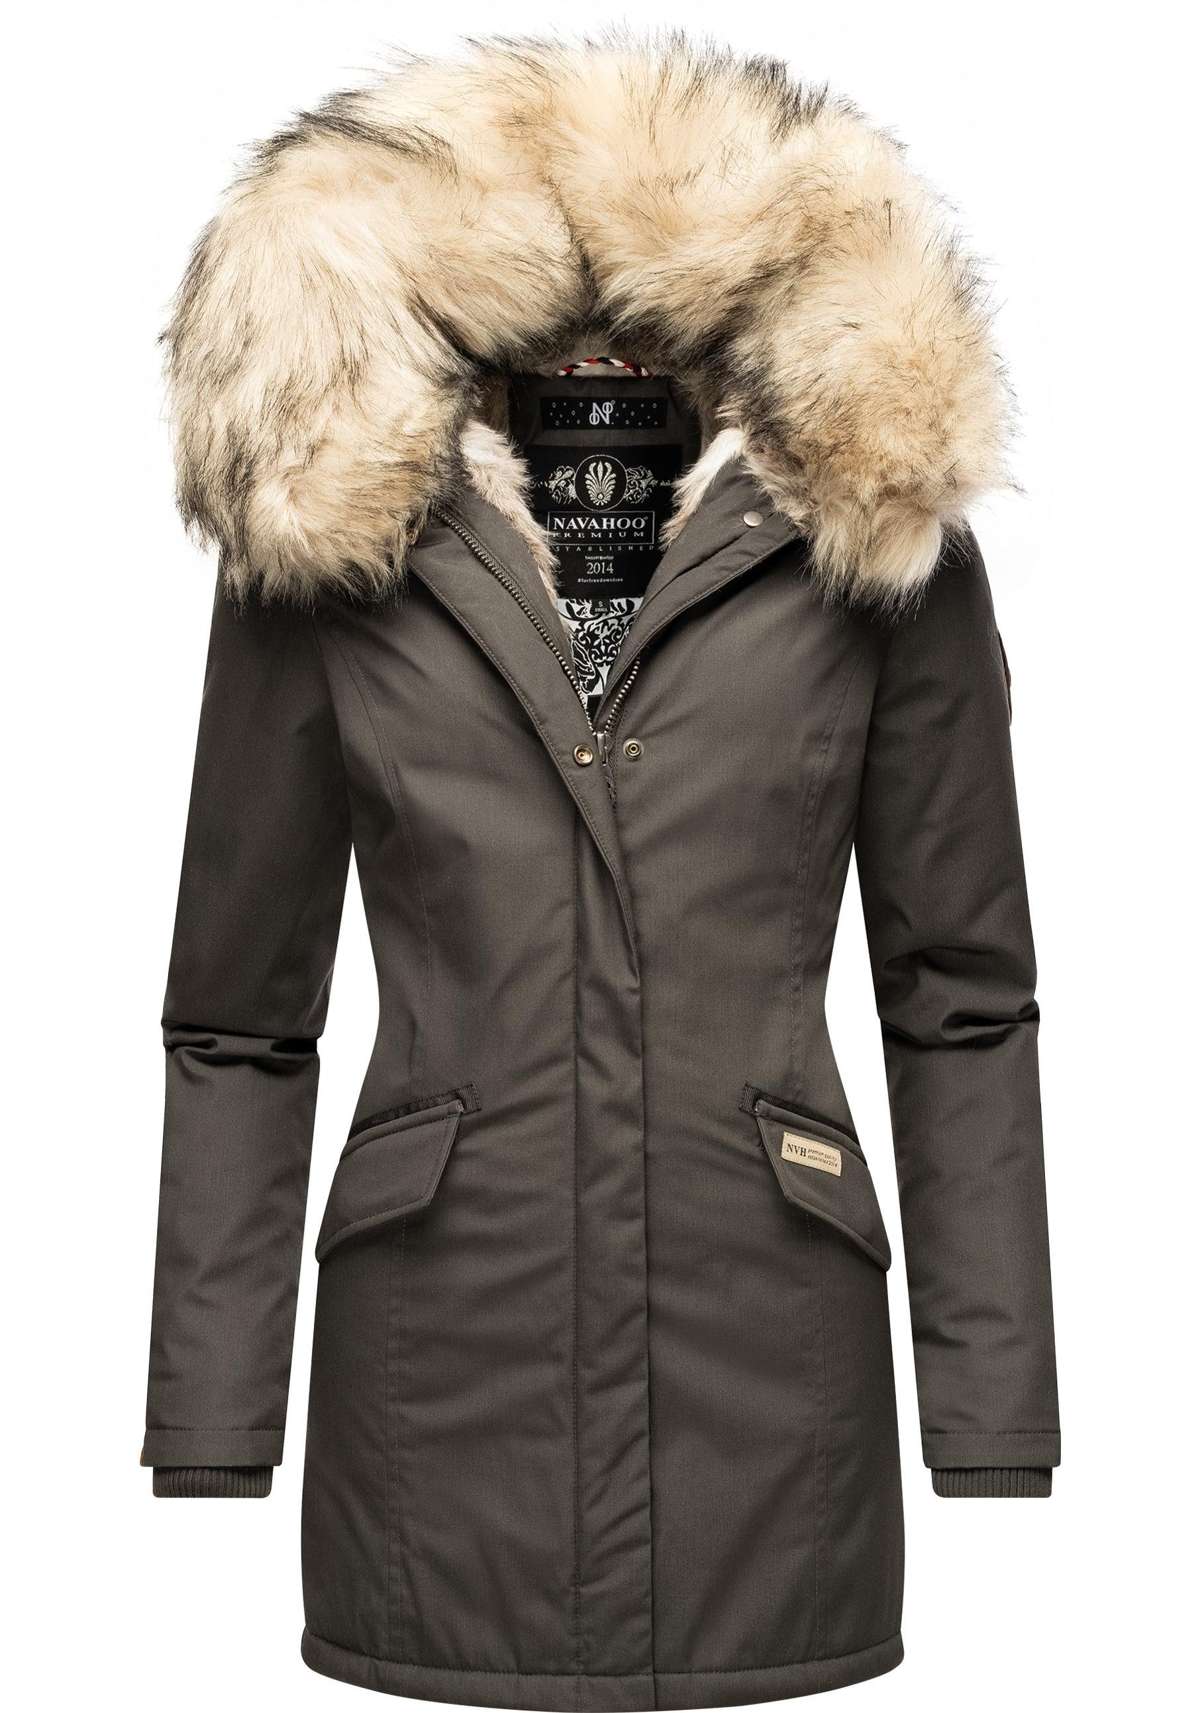 Пальто женское зимнее больших размеров - купить в Москве по цене от руб.